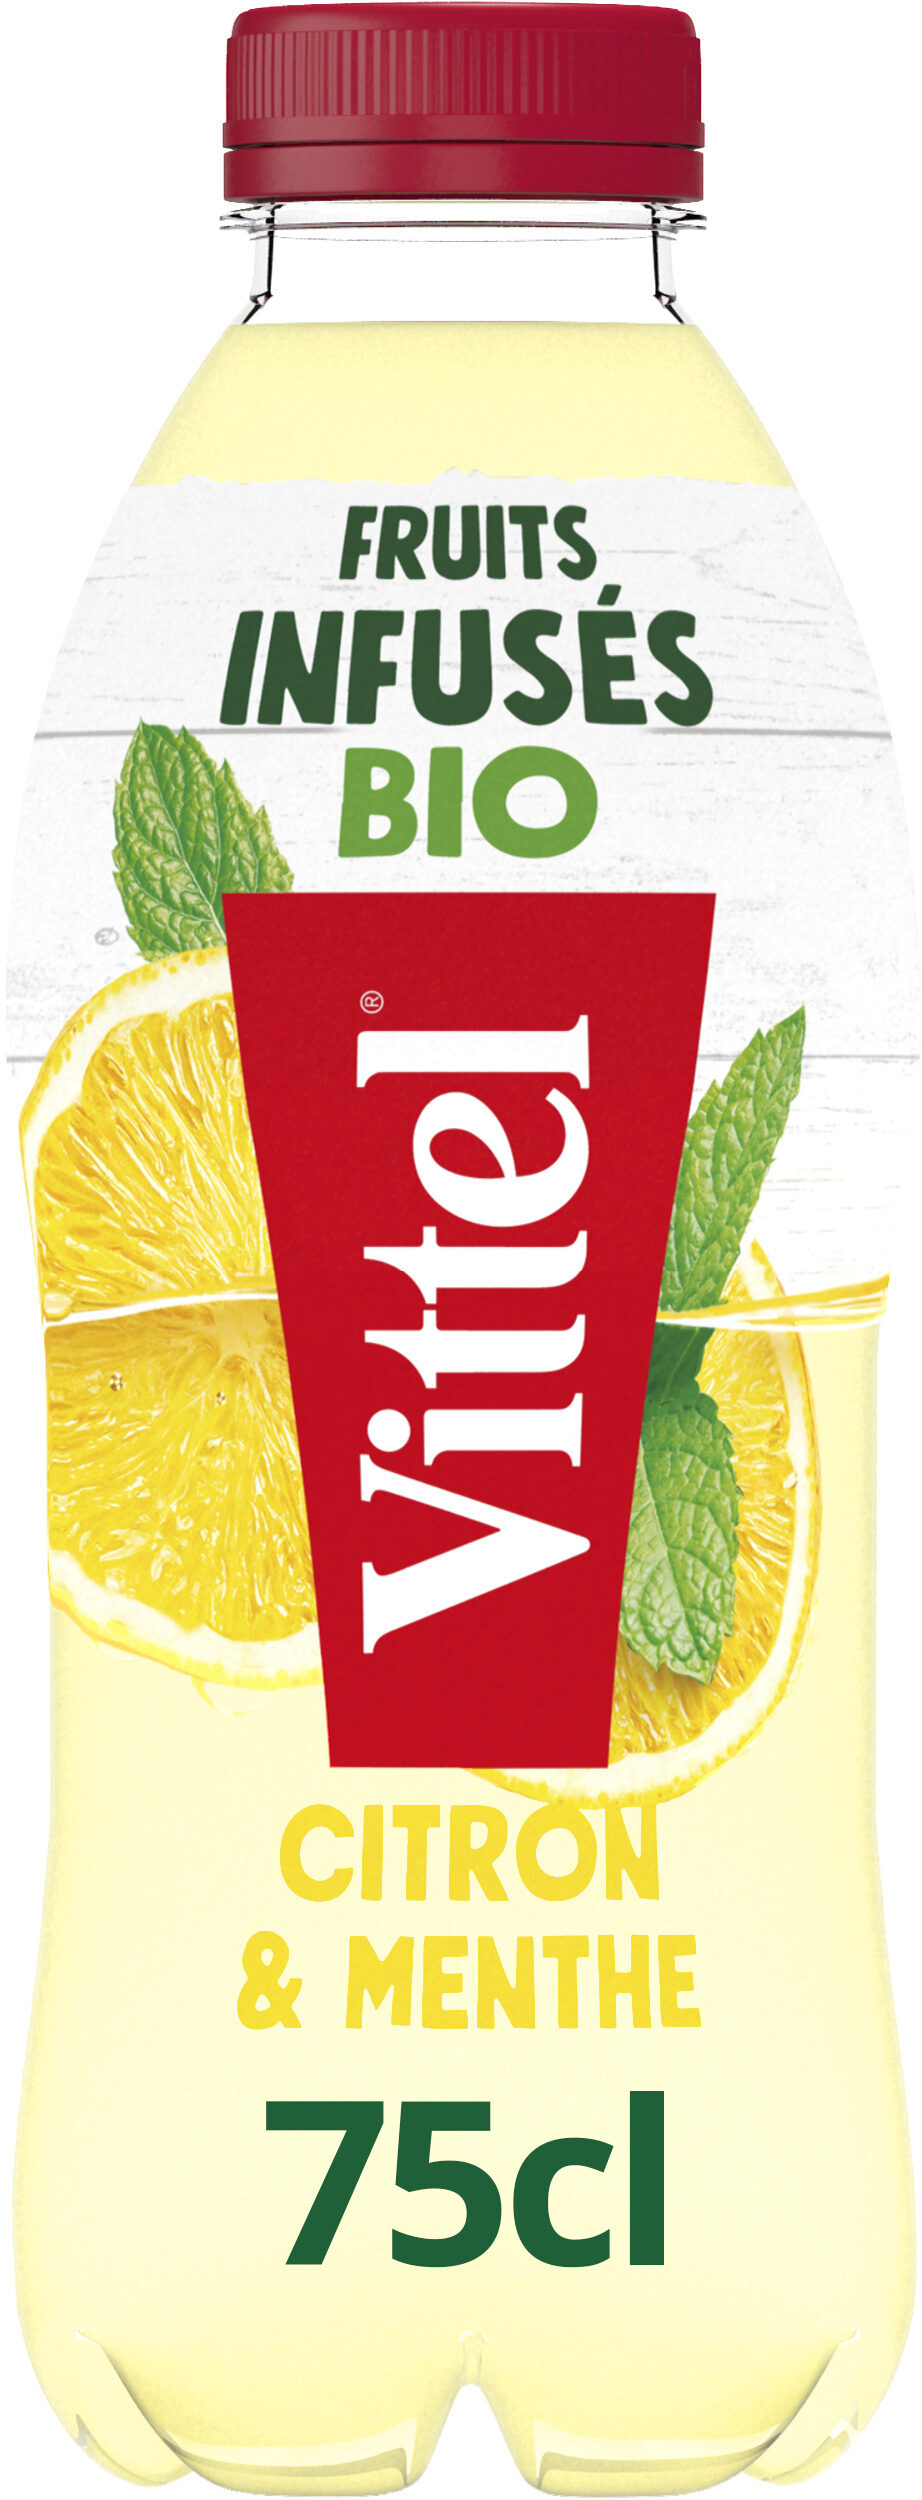 VITTEL Fruits Infusés bio eau aromatisée Citron Menthe 75cl - Product - fr